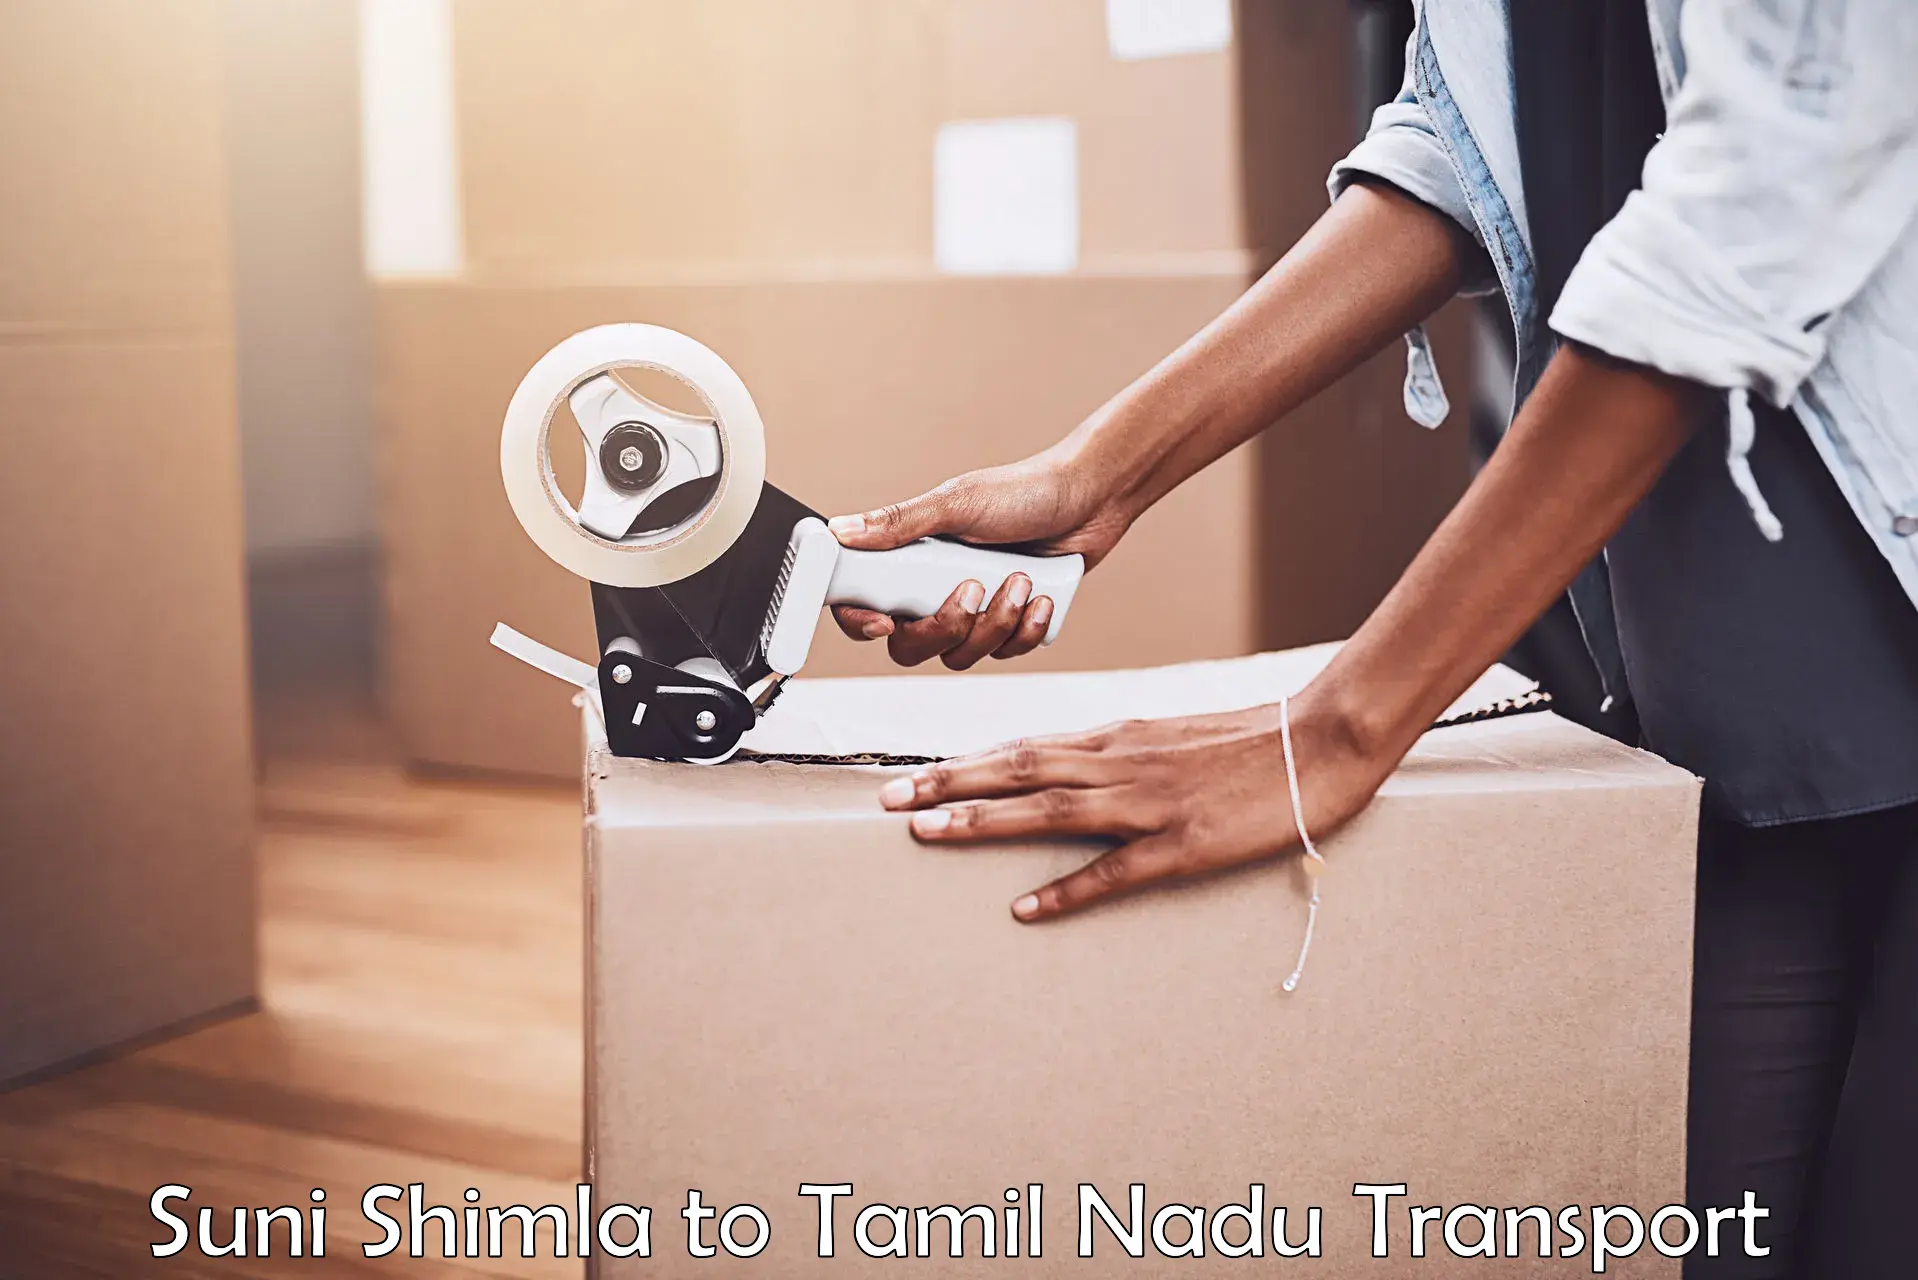 Transport in sharing Suni Shimla to Chennai